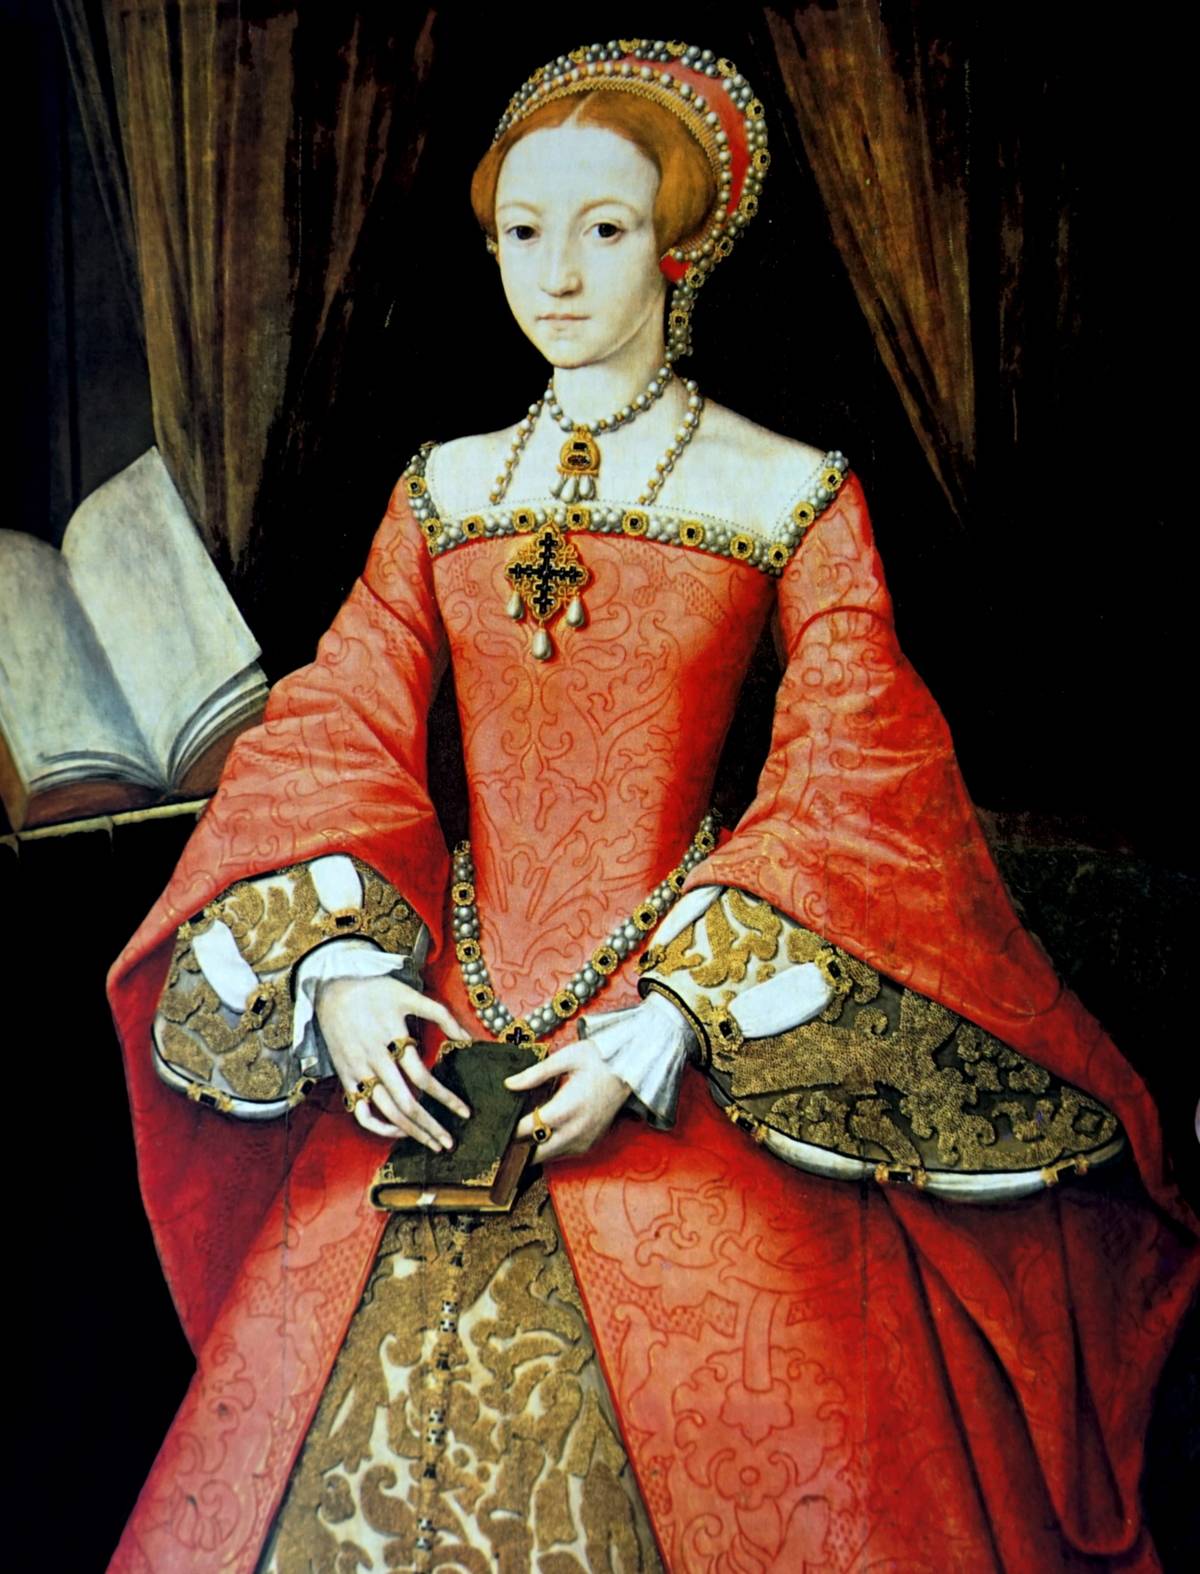 A young Queen Elizabeth I.